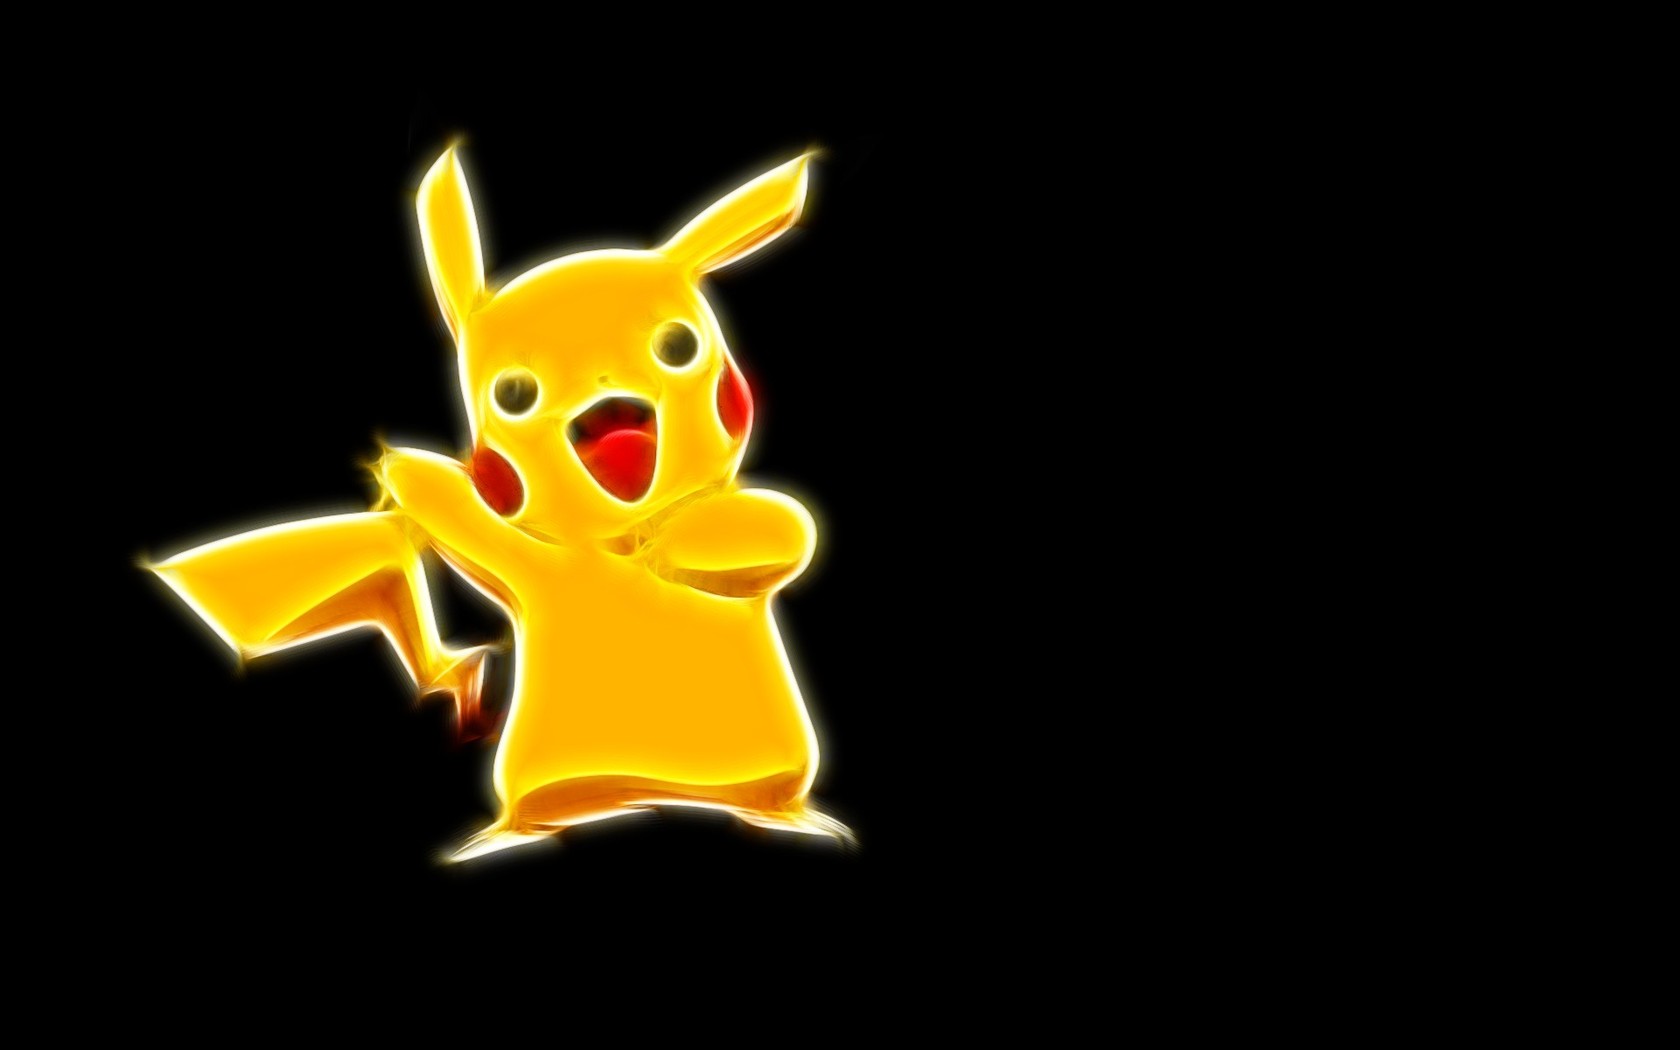 Pikachu   Pokemon wallpaper 4610